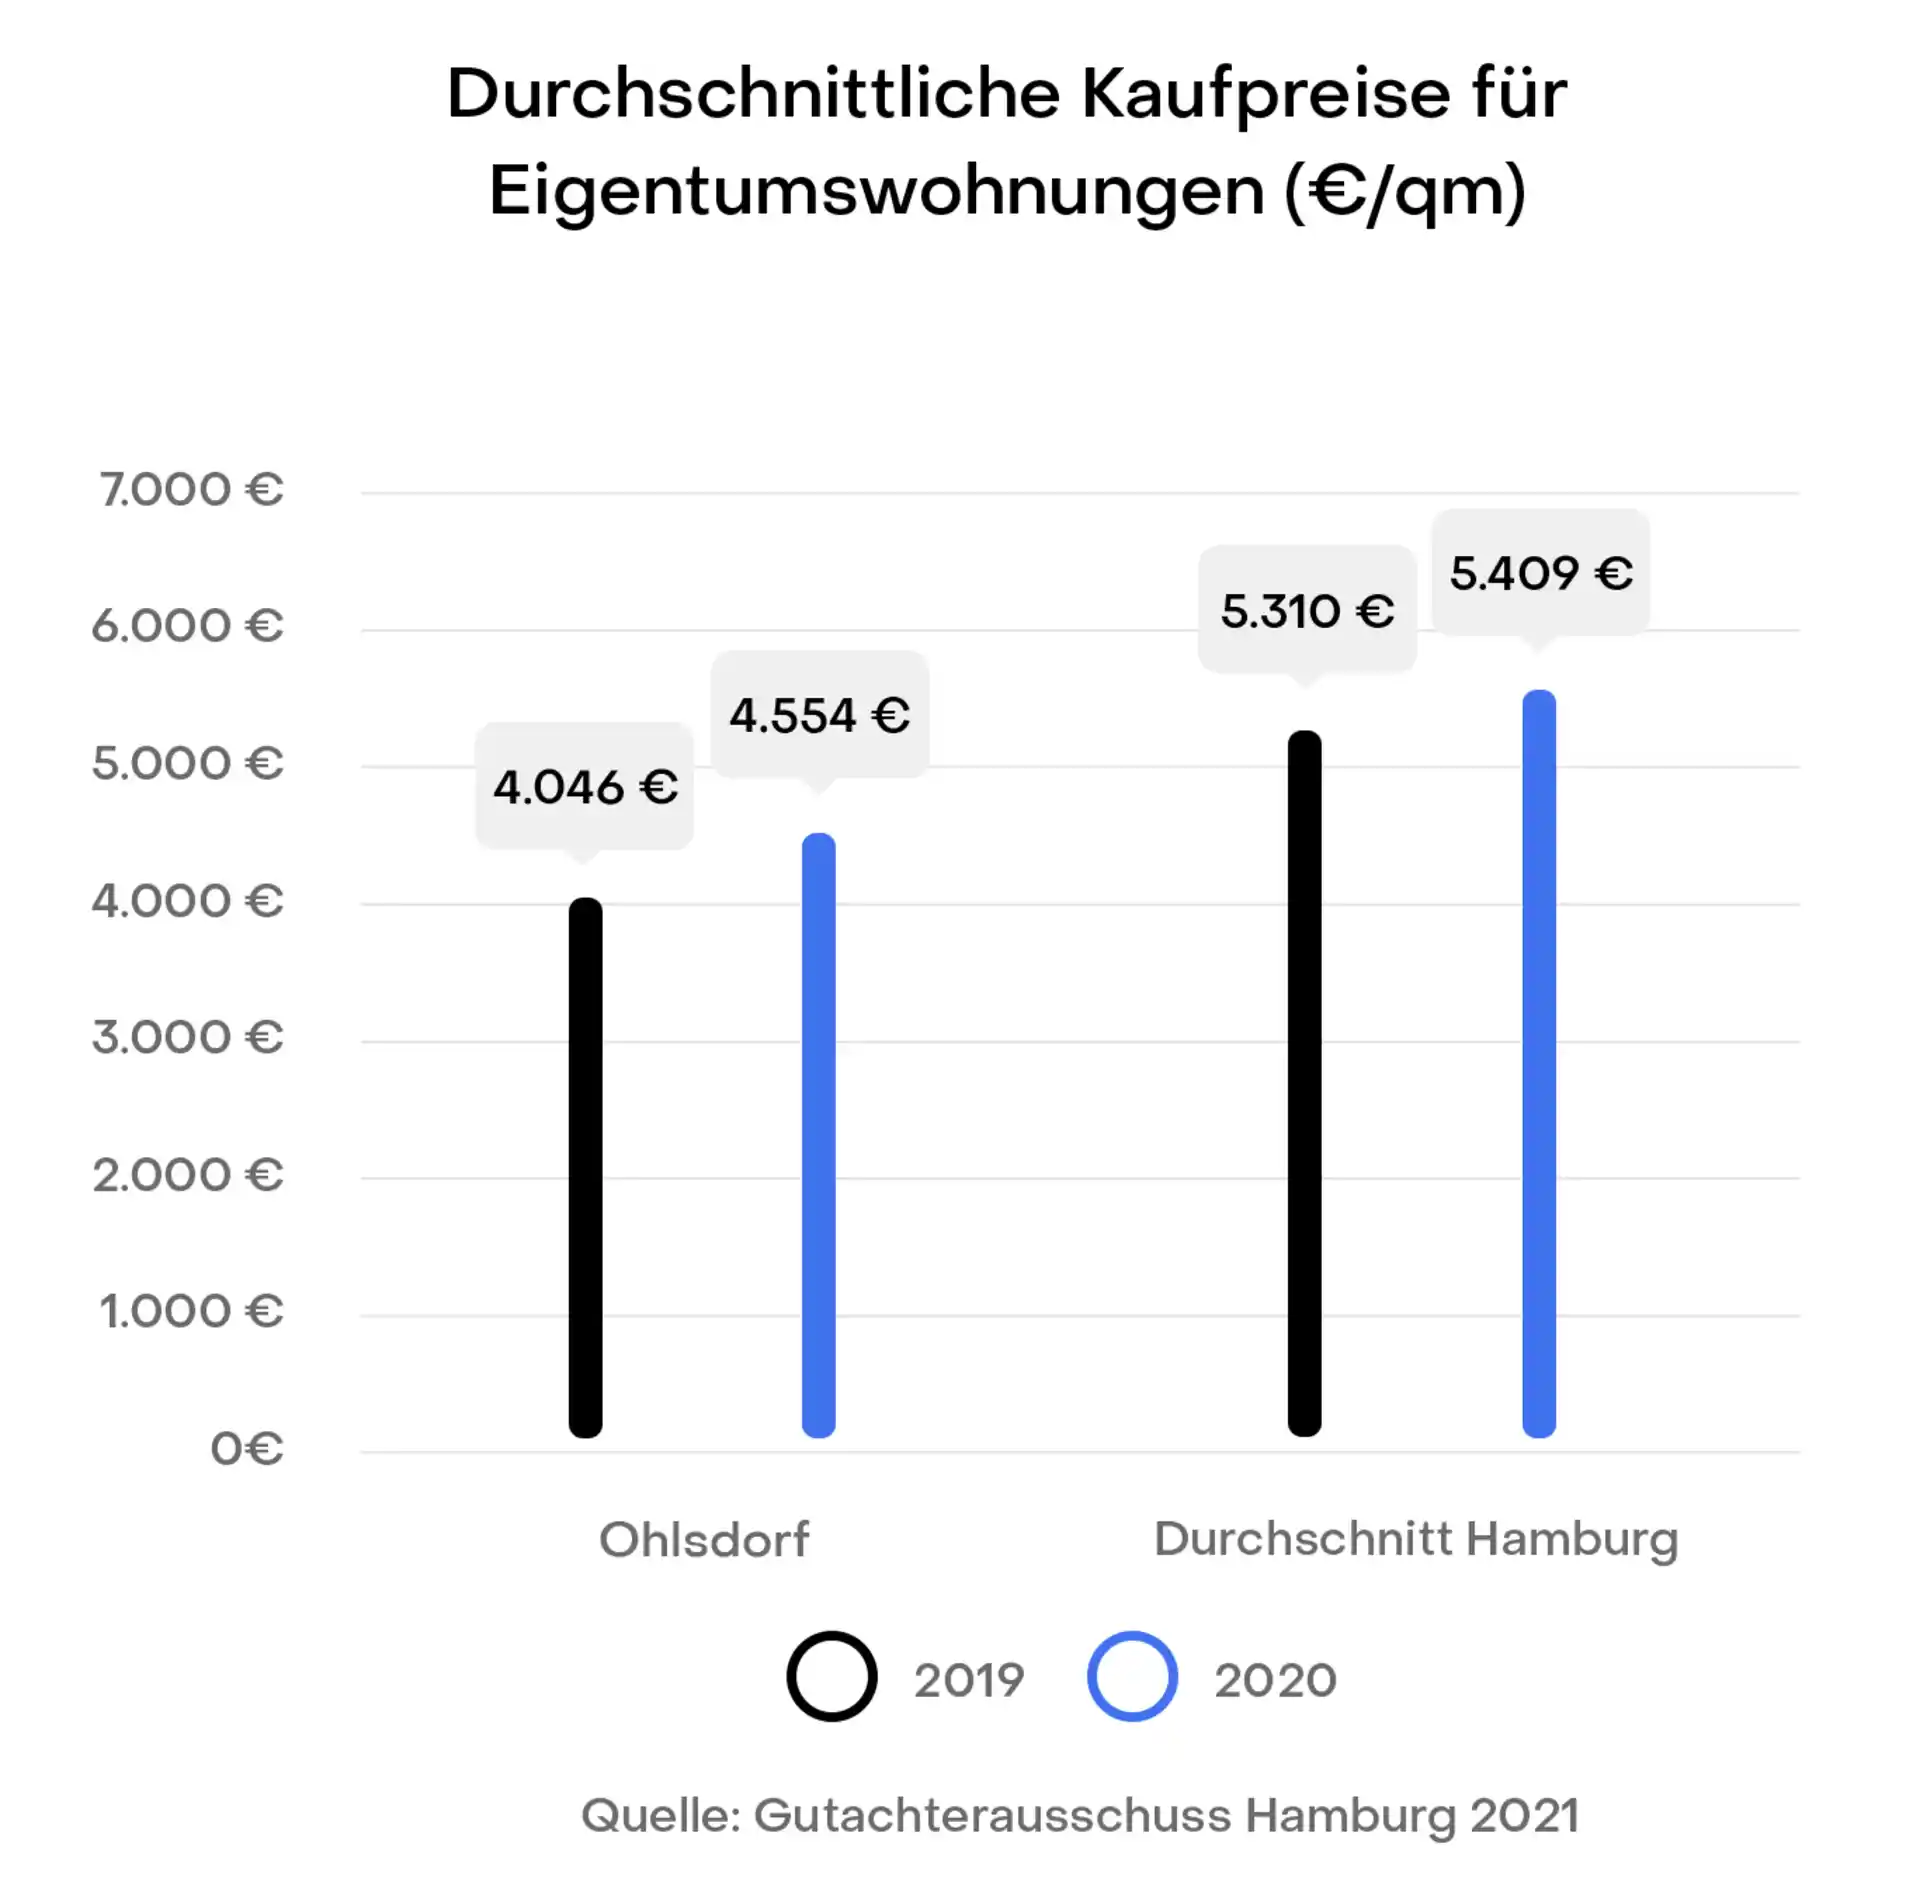 Hamburg Ohlsdorf Preisentwicklung Immobilien Kaufpreise
Gutachterausschuss